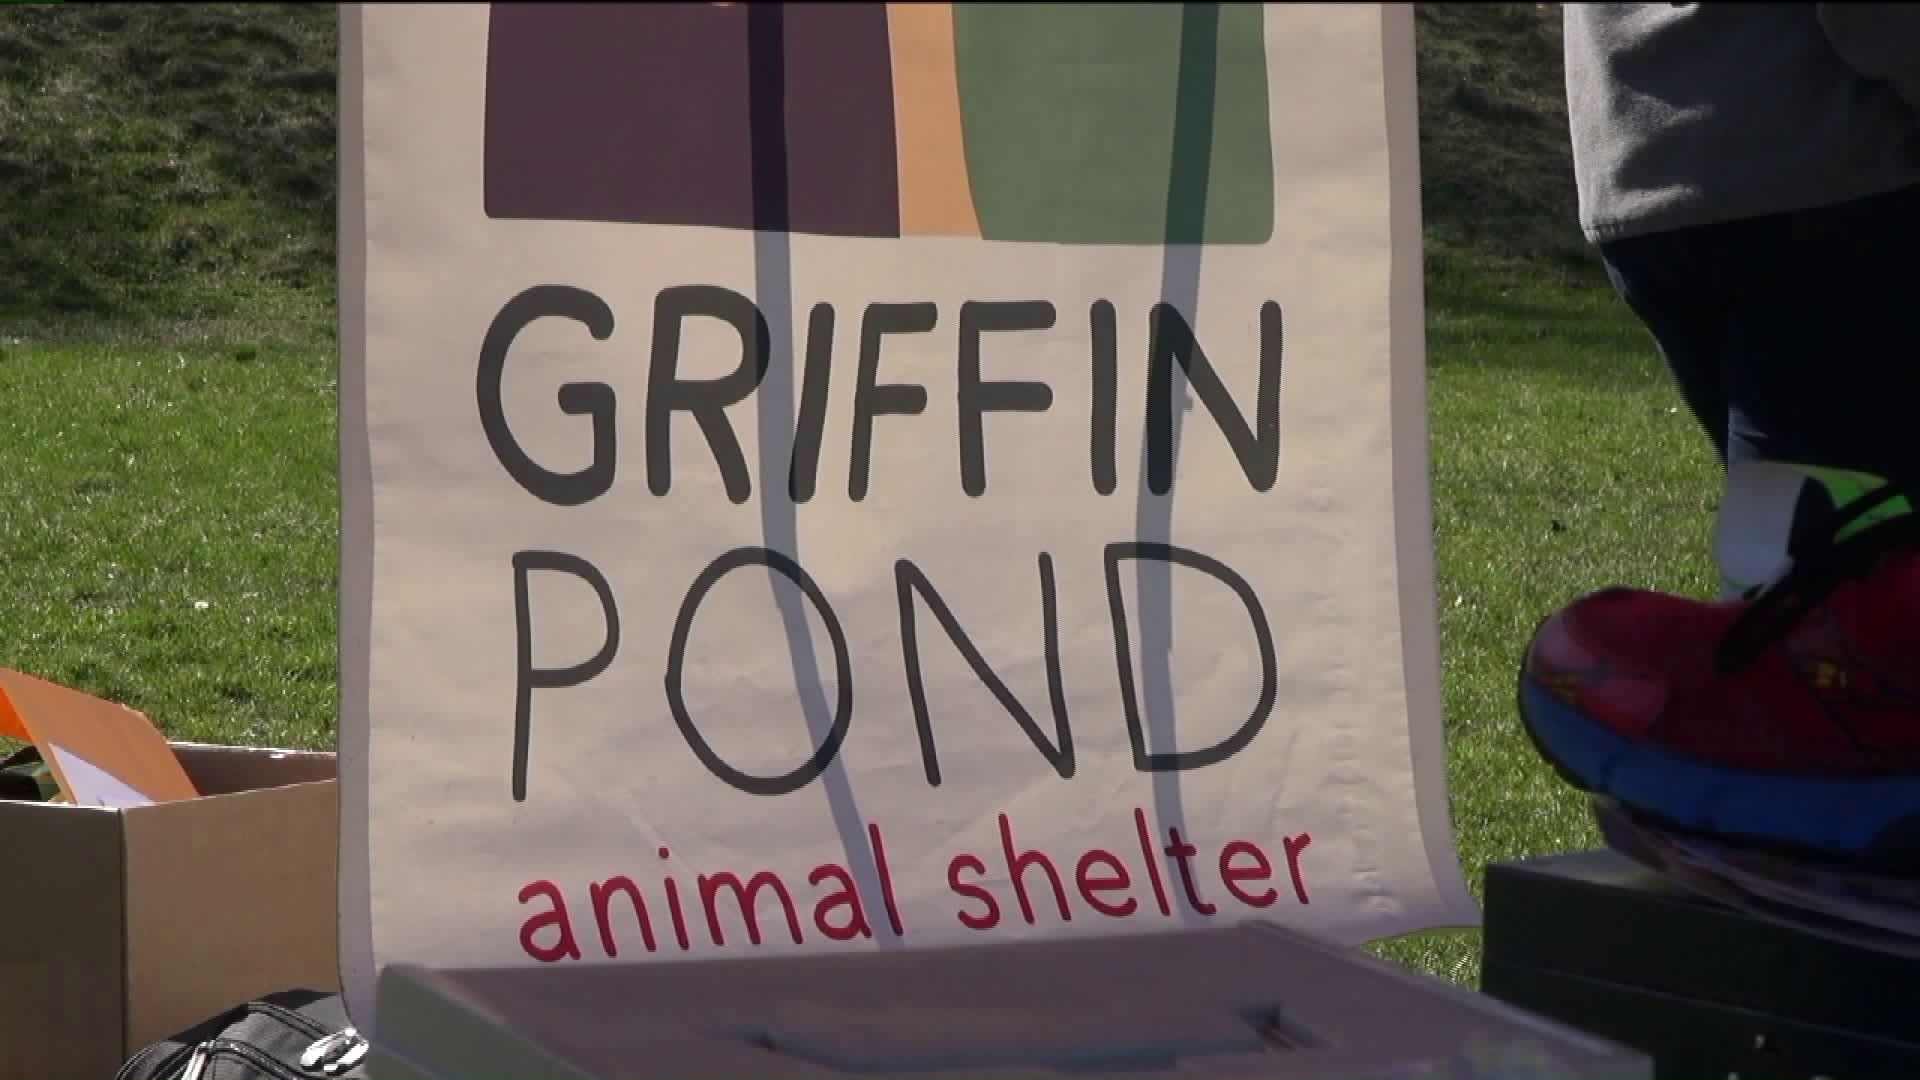 5k Helps Griffin Pond Animal Shelter